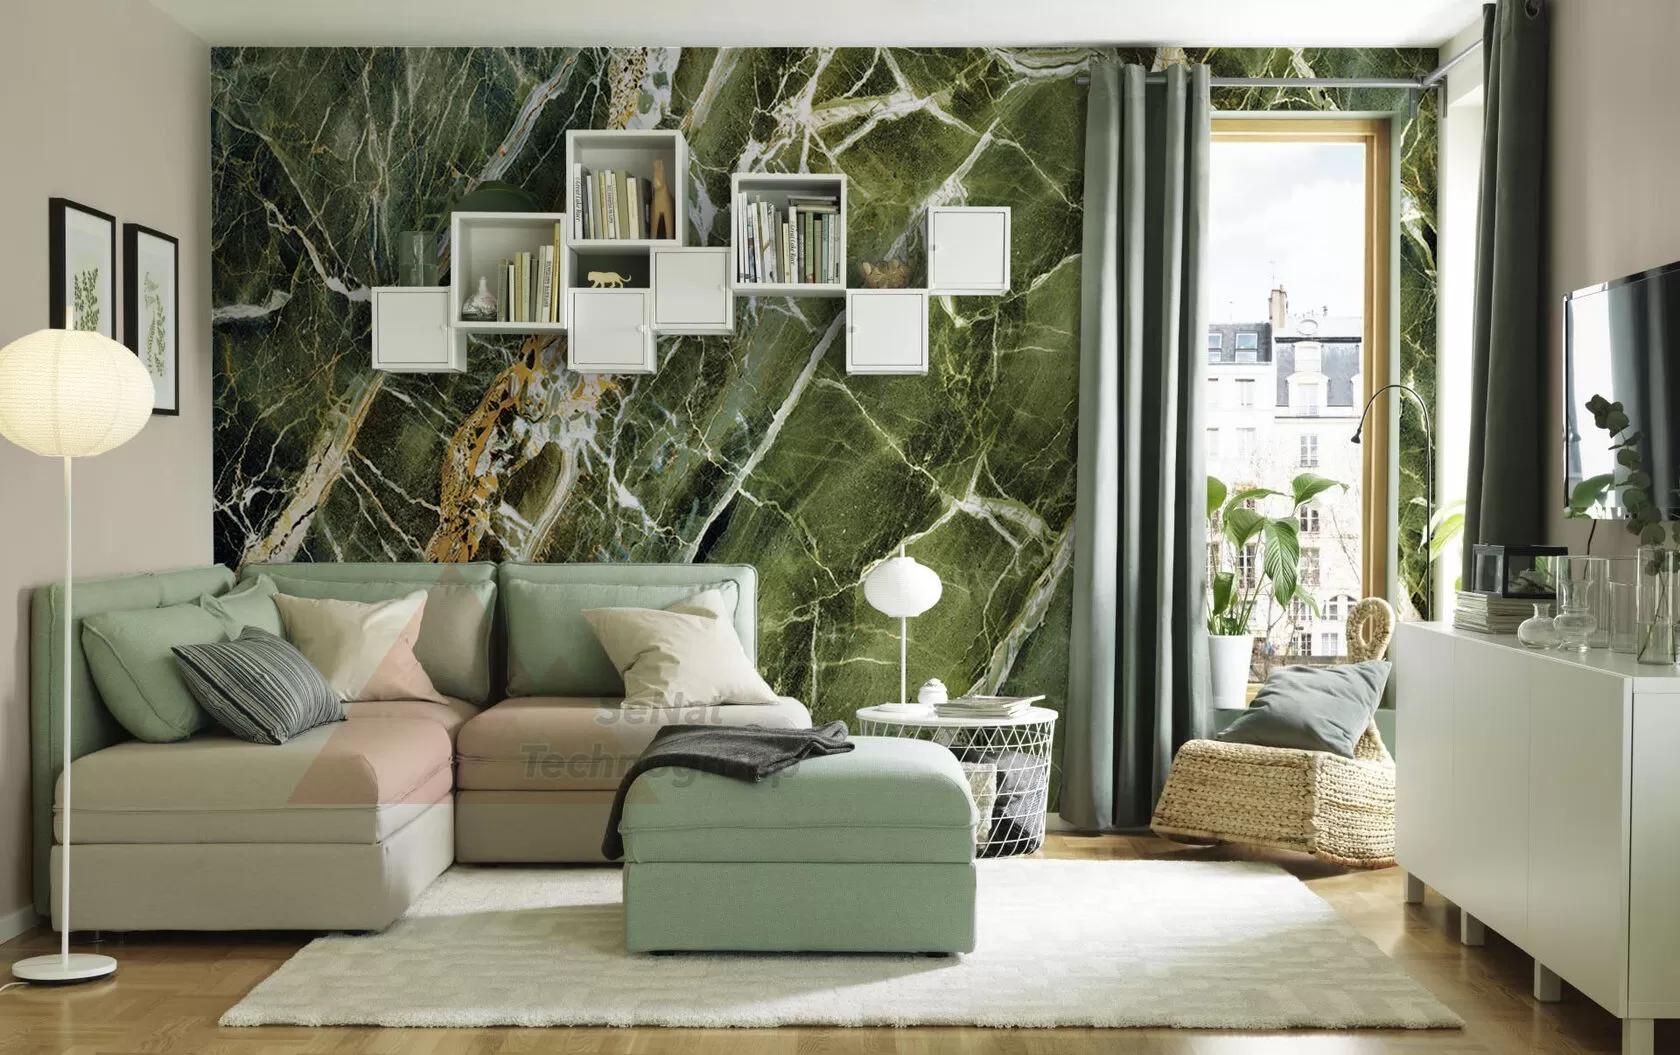 Нефрит Cl гибкий мрамор зеленого цвета для стен, фасадов и для светодизайна.